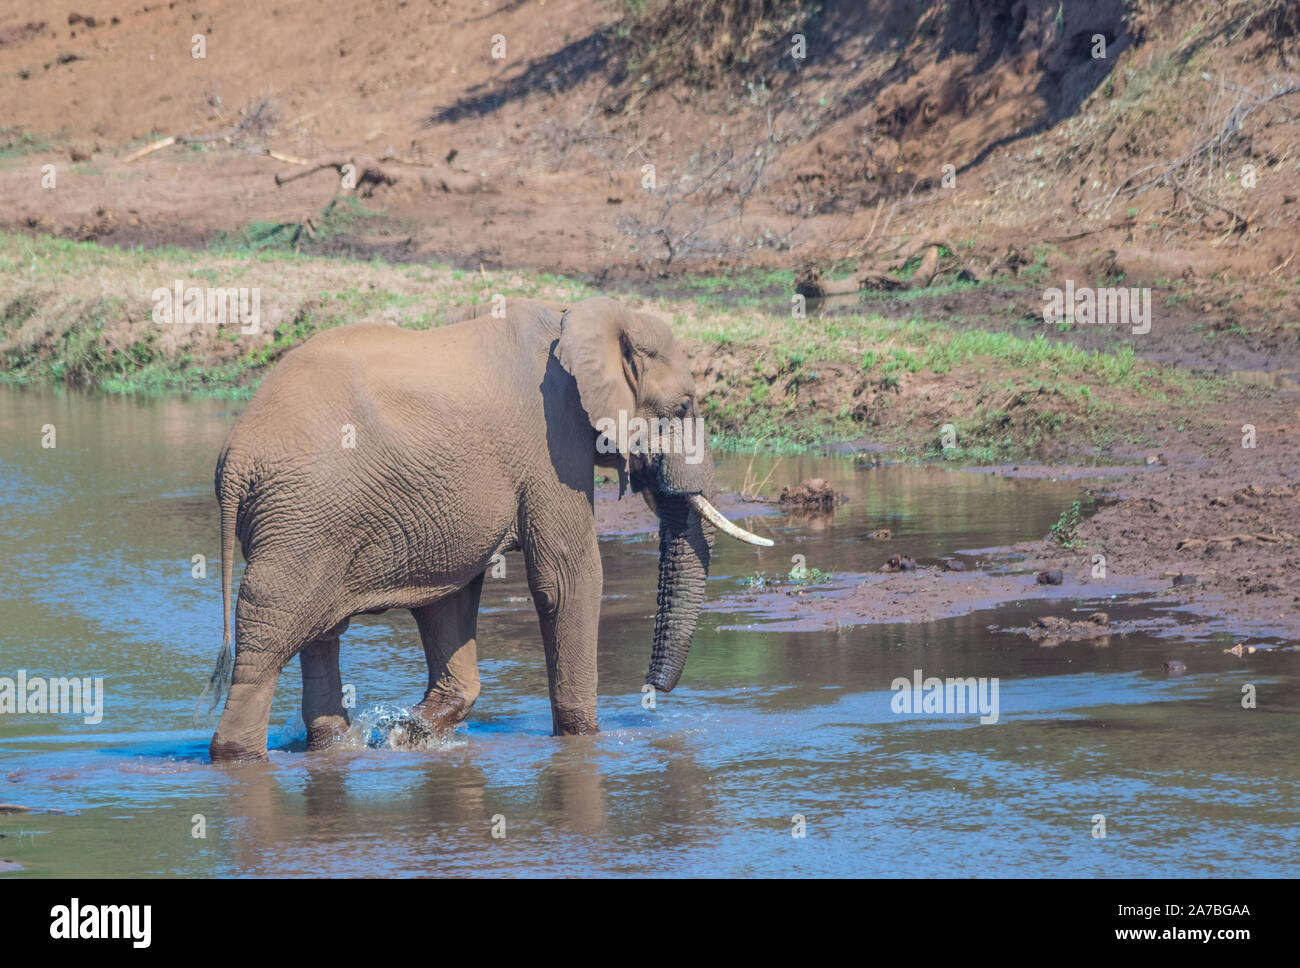 Ansicht von hinten von einem afrikanischen Elefanten wandern in den Luvuvhu Fluss in der Krüger Nationalpark in Südafrika Bild im Querformat. Stockfoto